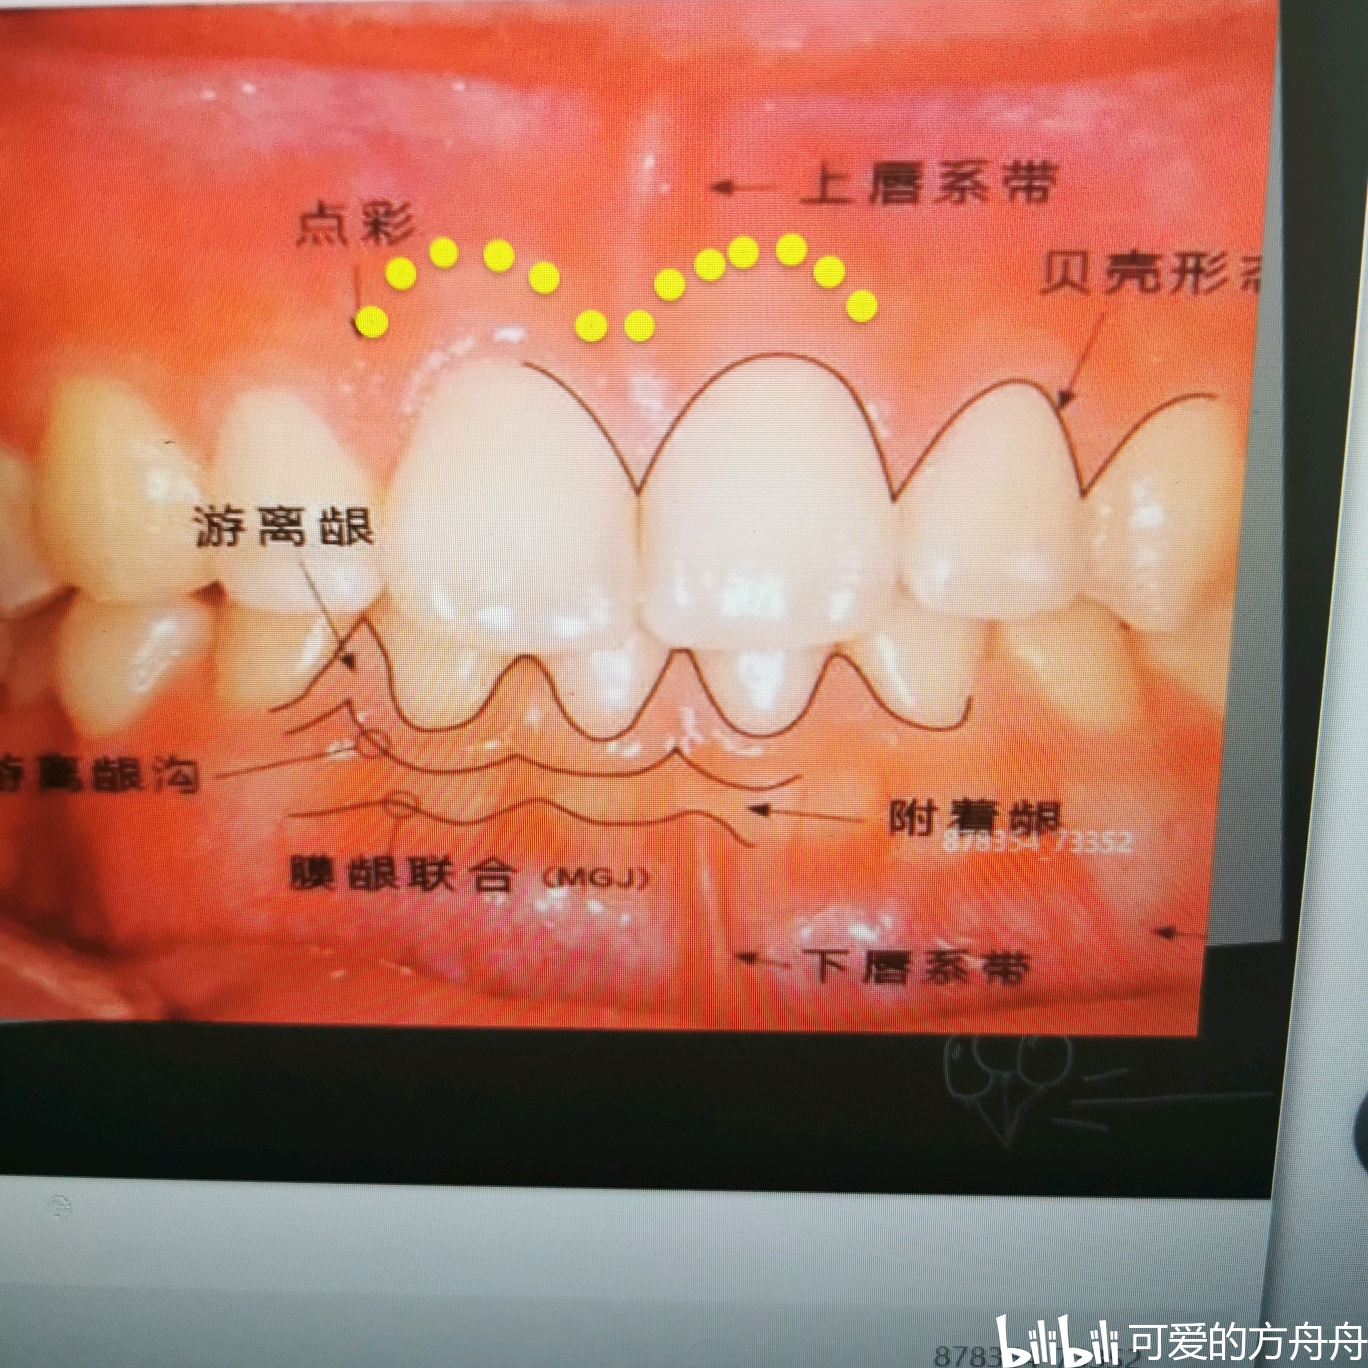 急 ! 急 ! 这是牙龈线性红斑么? 还是一般的牙龈红肿?_百度知道